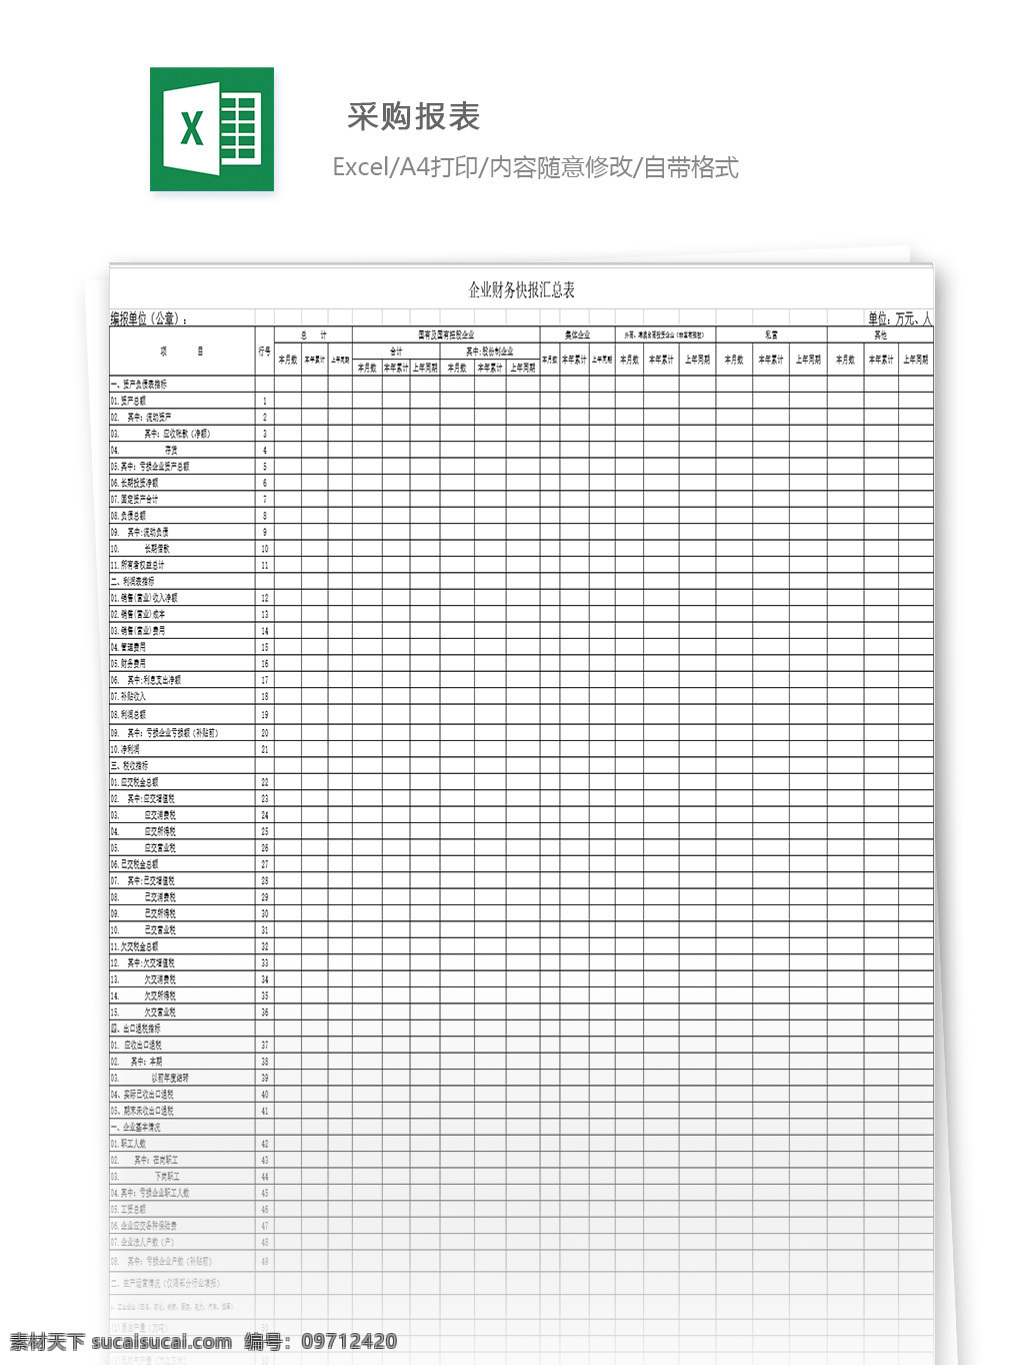 采购报表 表格 表格模板 表格设计 图表 采购单 报表